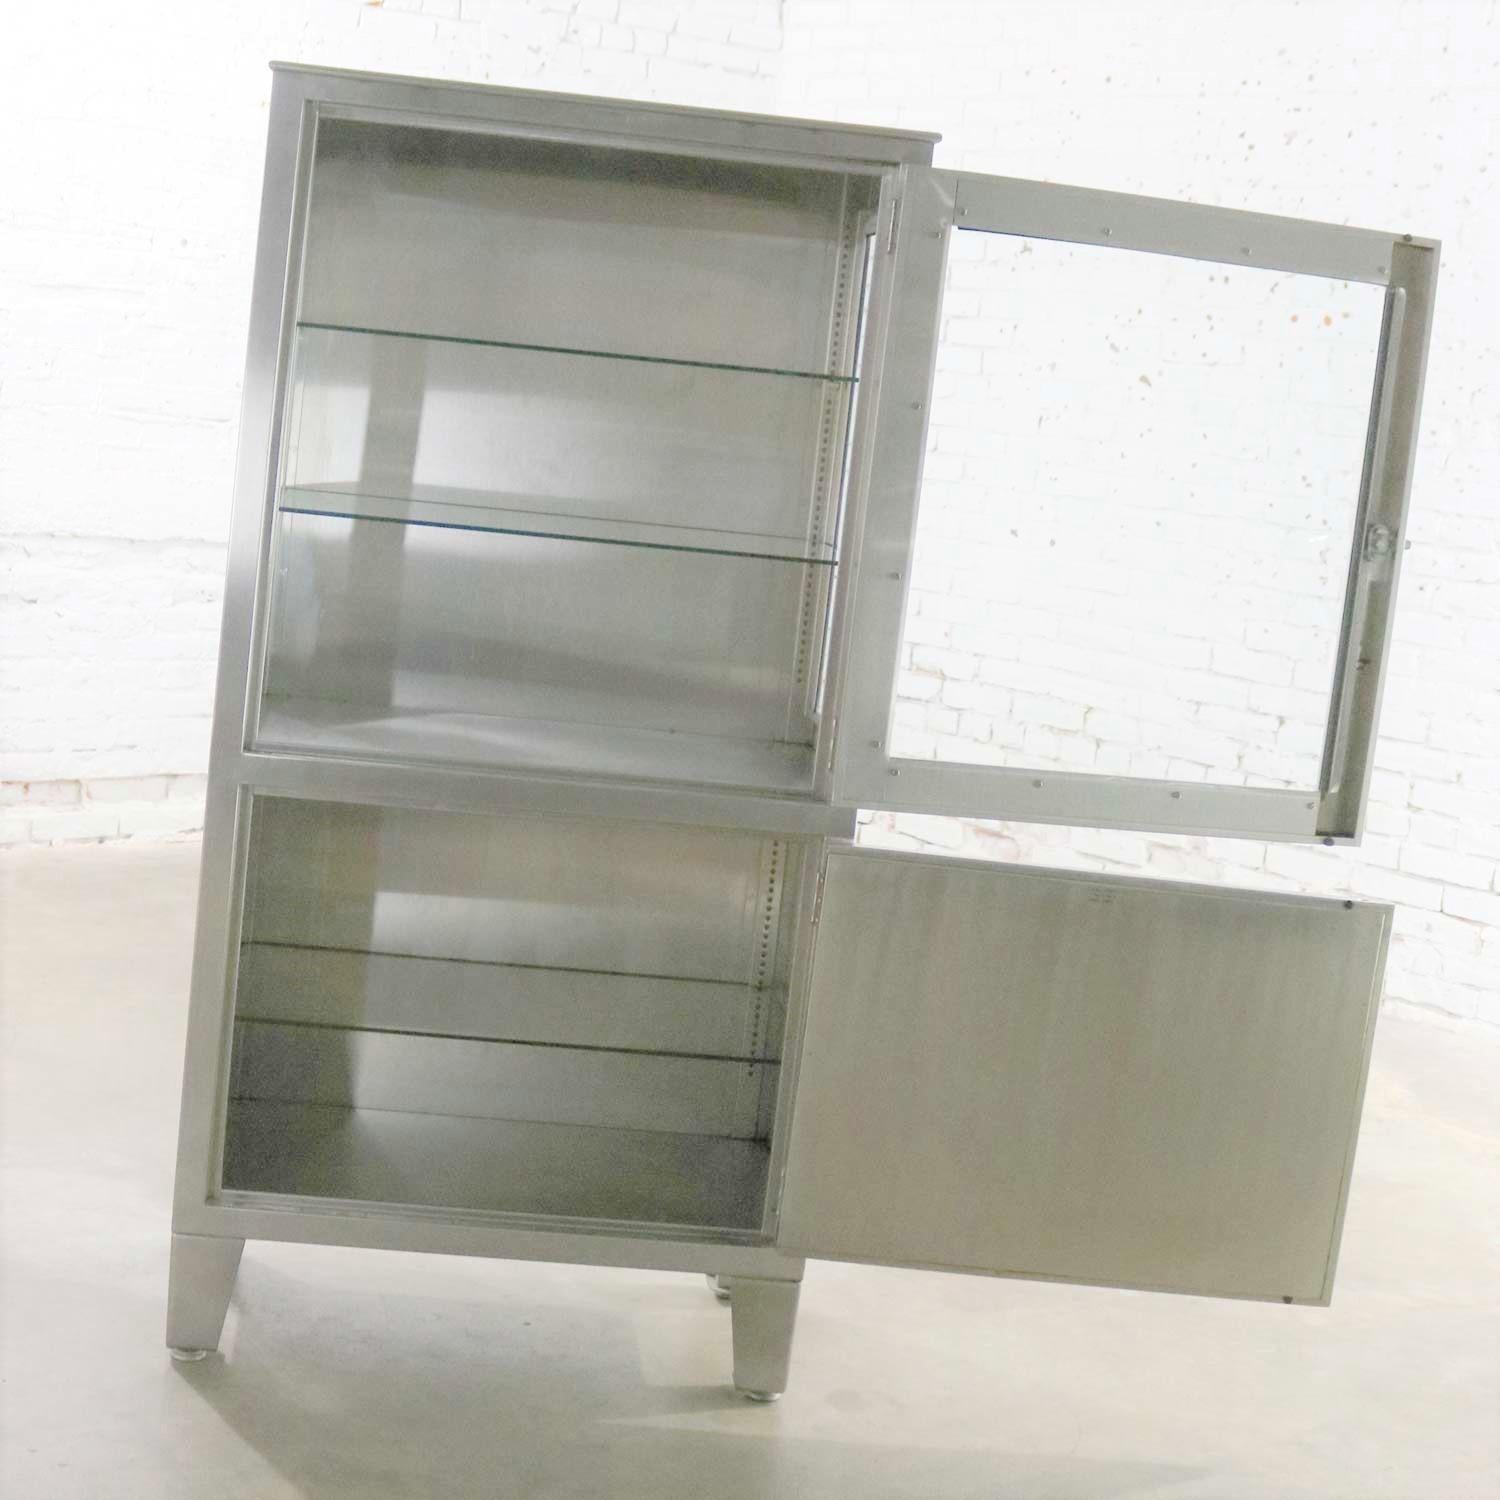 Vintage Petite Stainless Steel Industrial or Medical Display Storage Cabinet PR 2